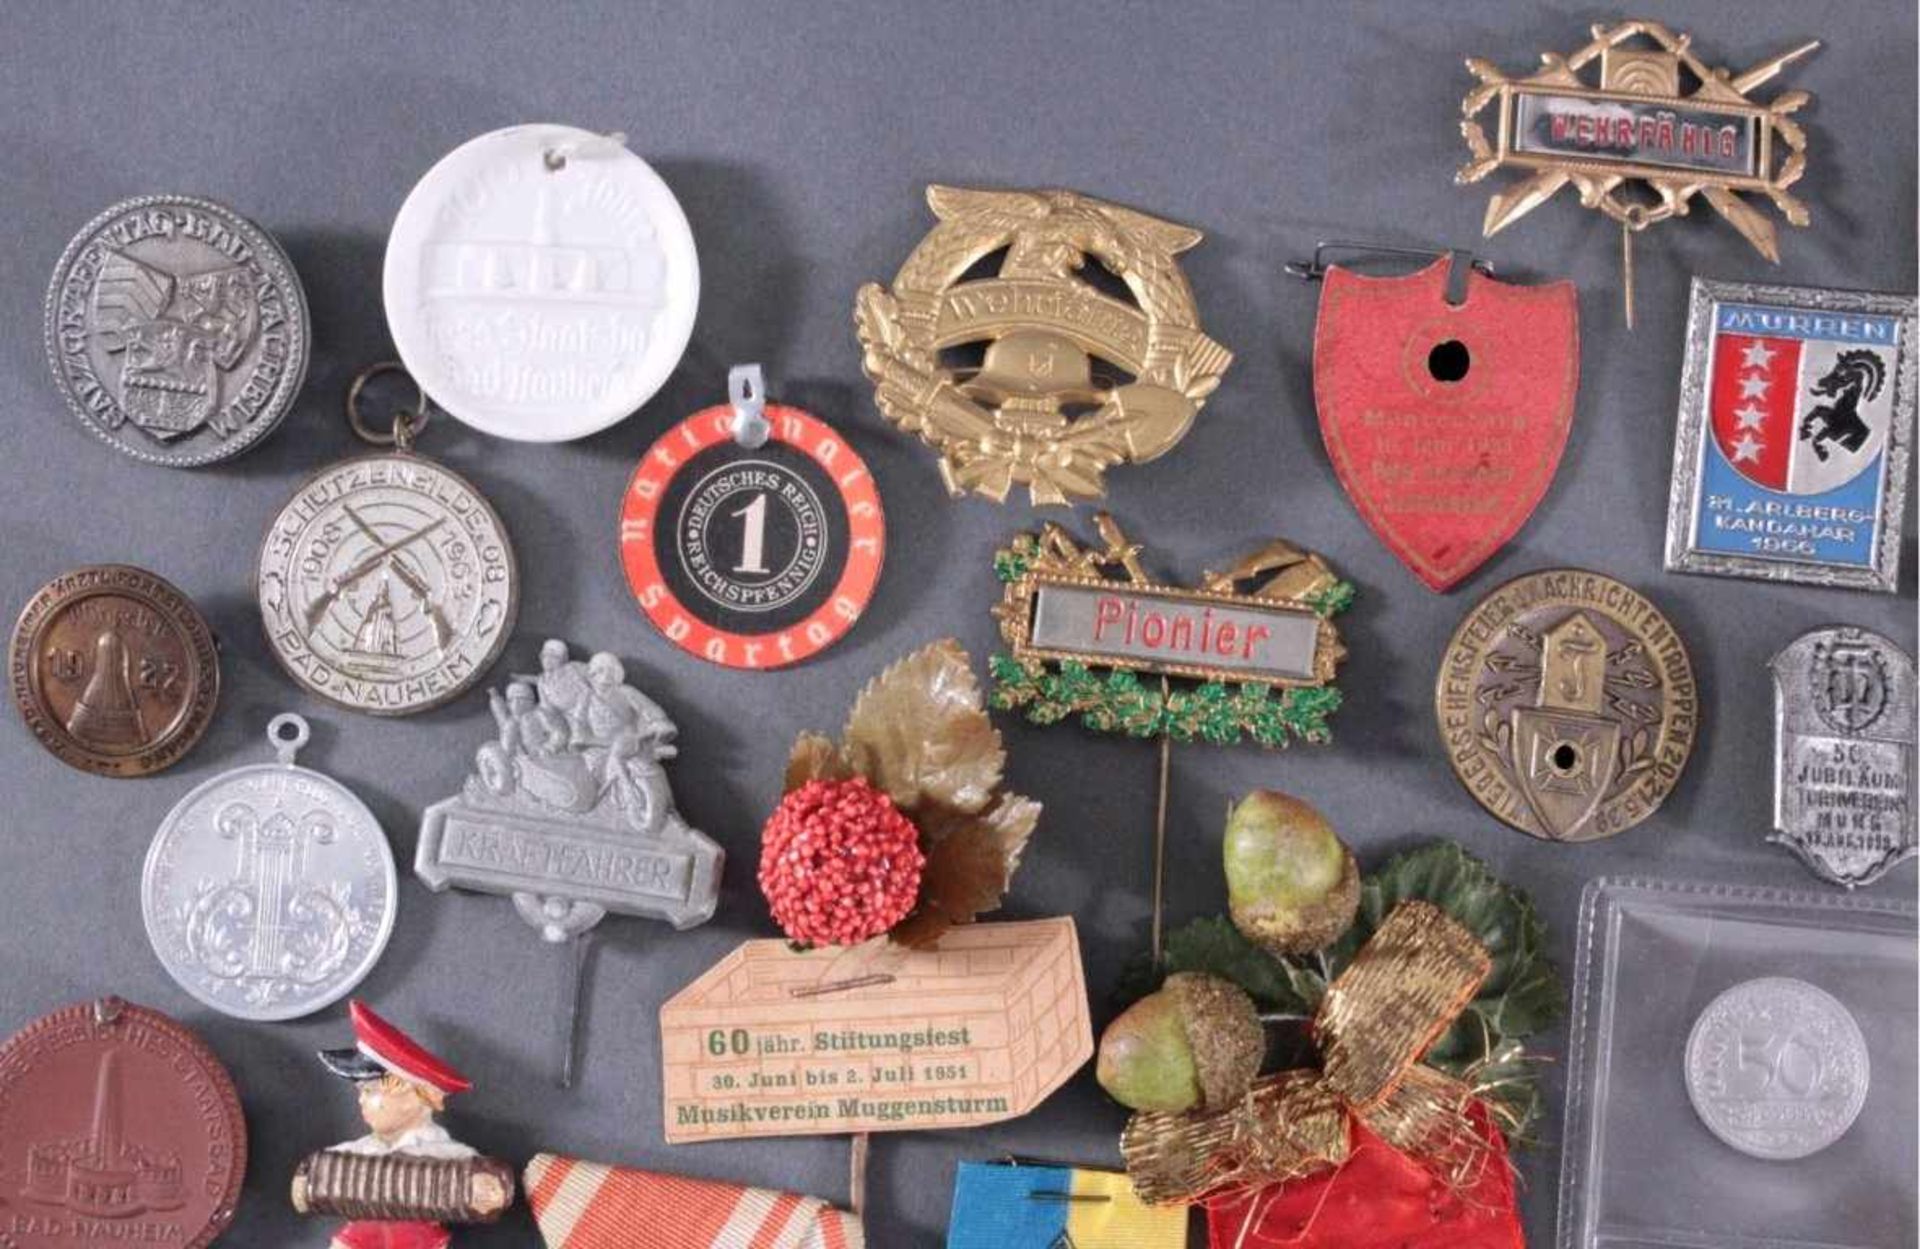 Münzen, Tagungs- und Veranstaltungsabzeichen Bad NauheimCa. 85 Stück, aus Metall, Porzellan, Holz, - Bild 2 aus 5